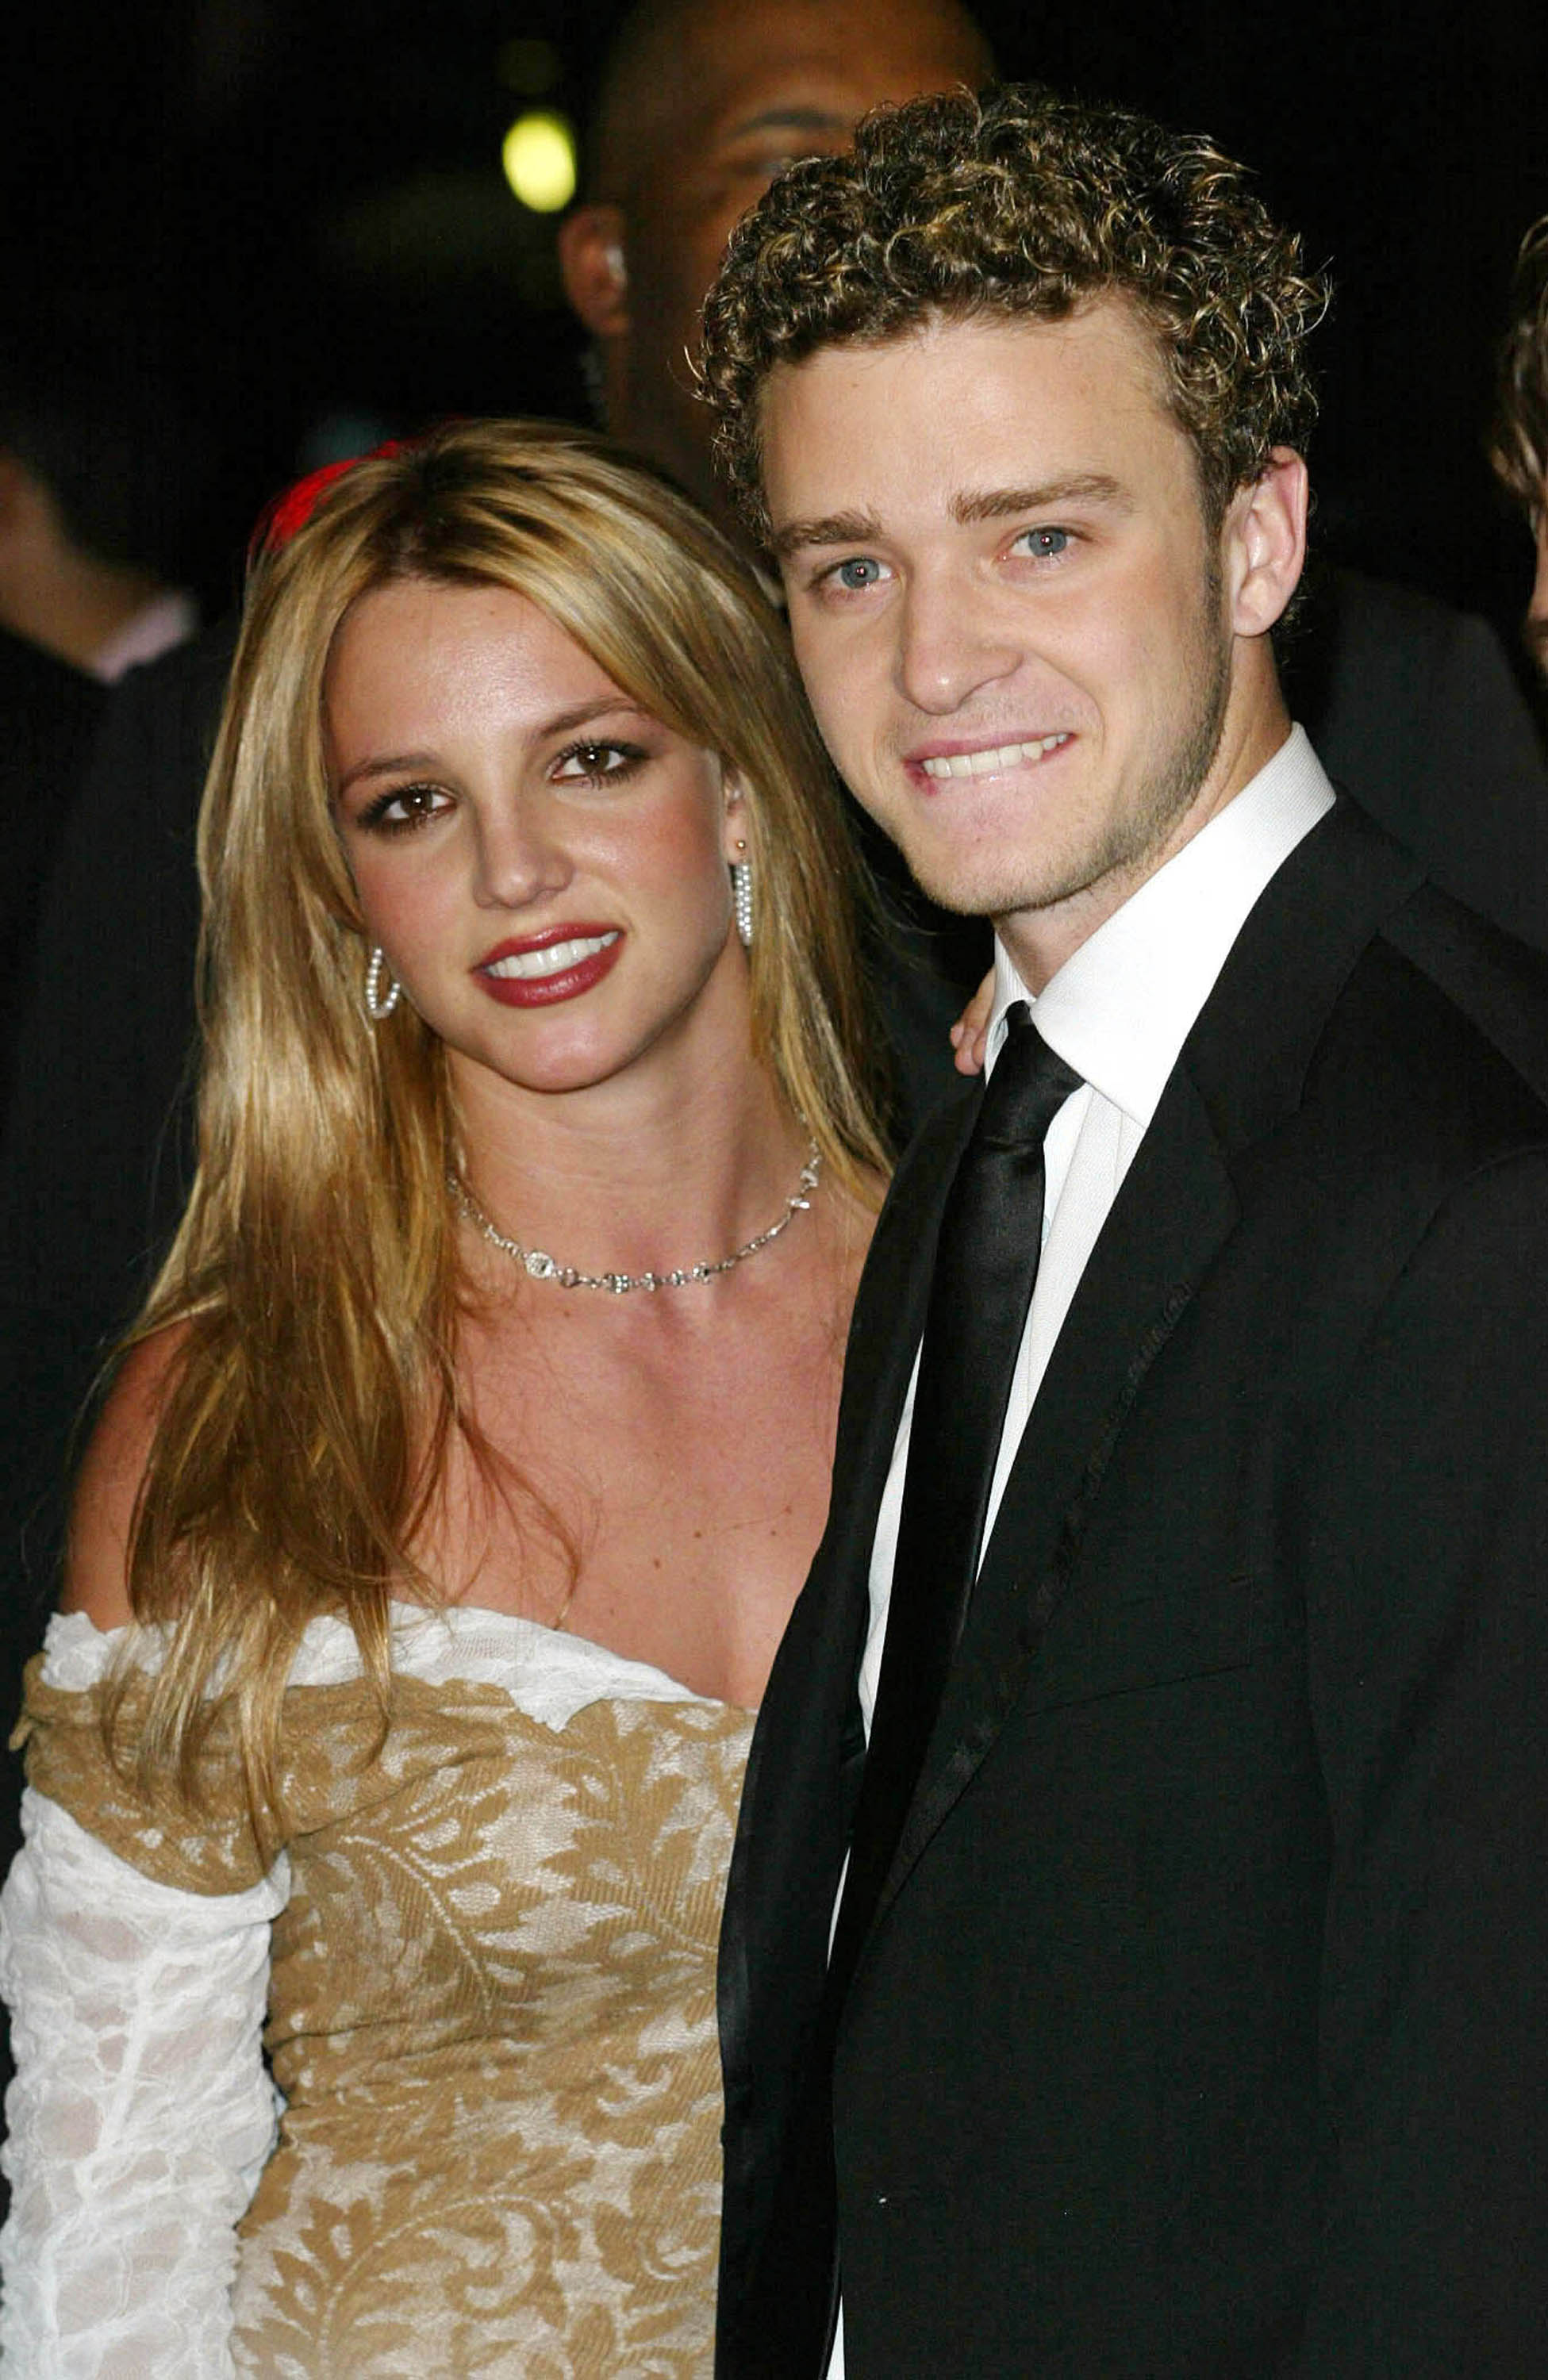 Britney Spears und Justin Timberlake bei der Clive Davis Pre-Grammy Party in Los Angeles, Kalifornien am 26. Februar 2002 | Quelle: Getty Images